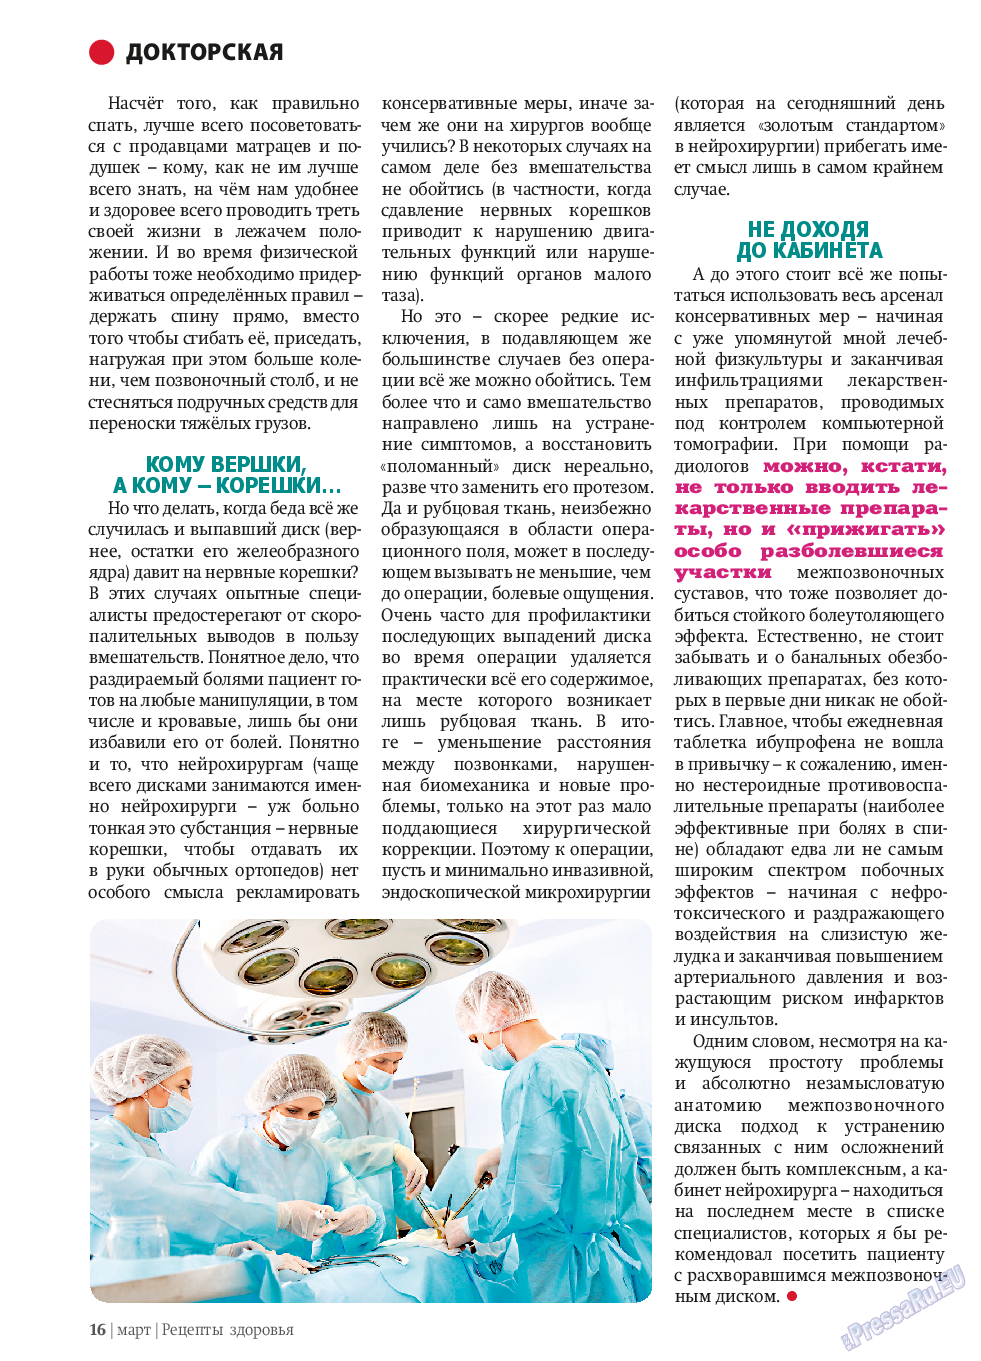 Рецепты здоровья, журнал. 2014 №58 стр.16